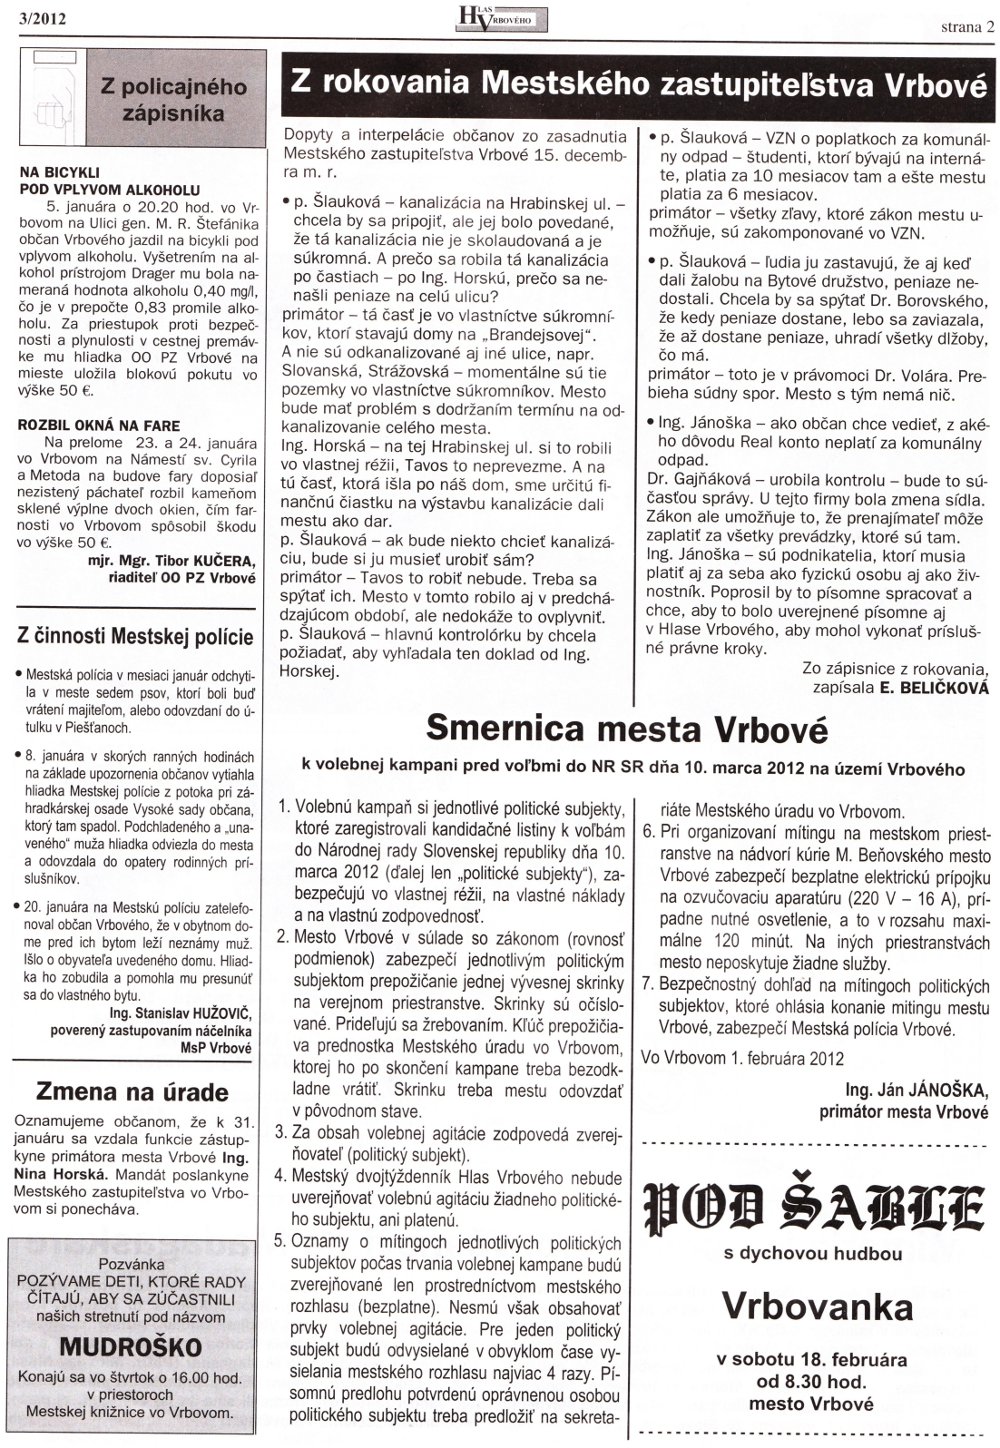 Hlas Vrbového 03/2012, strana 2